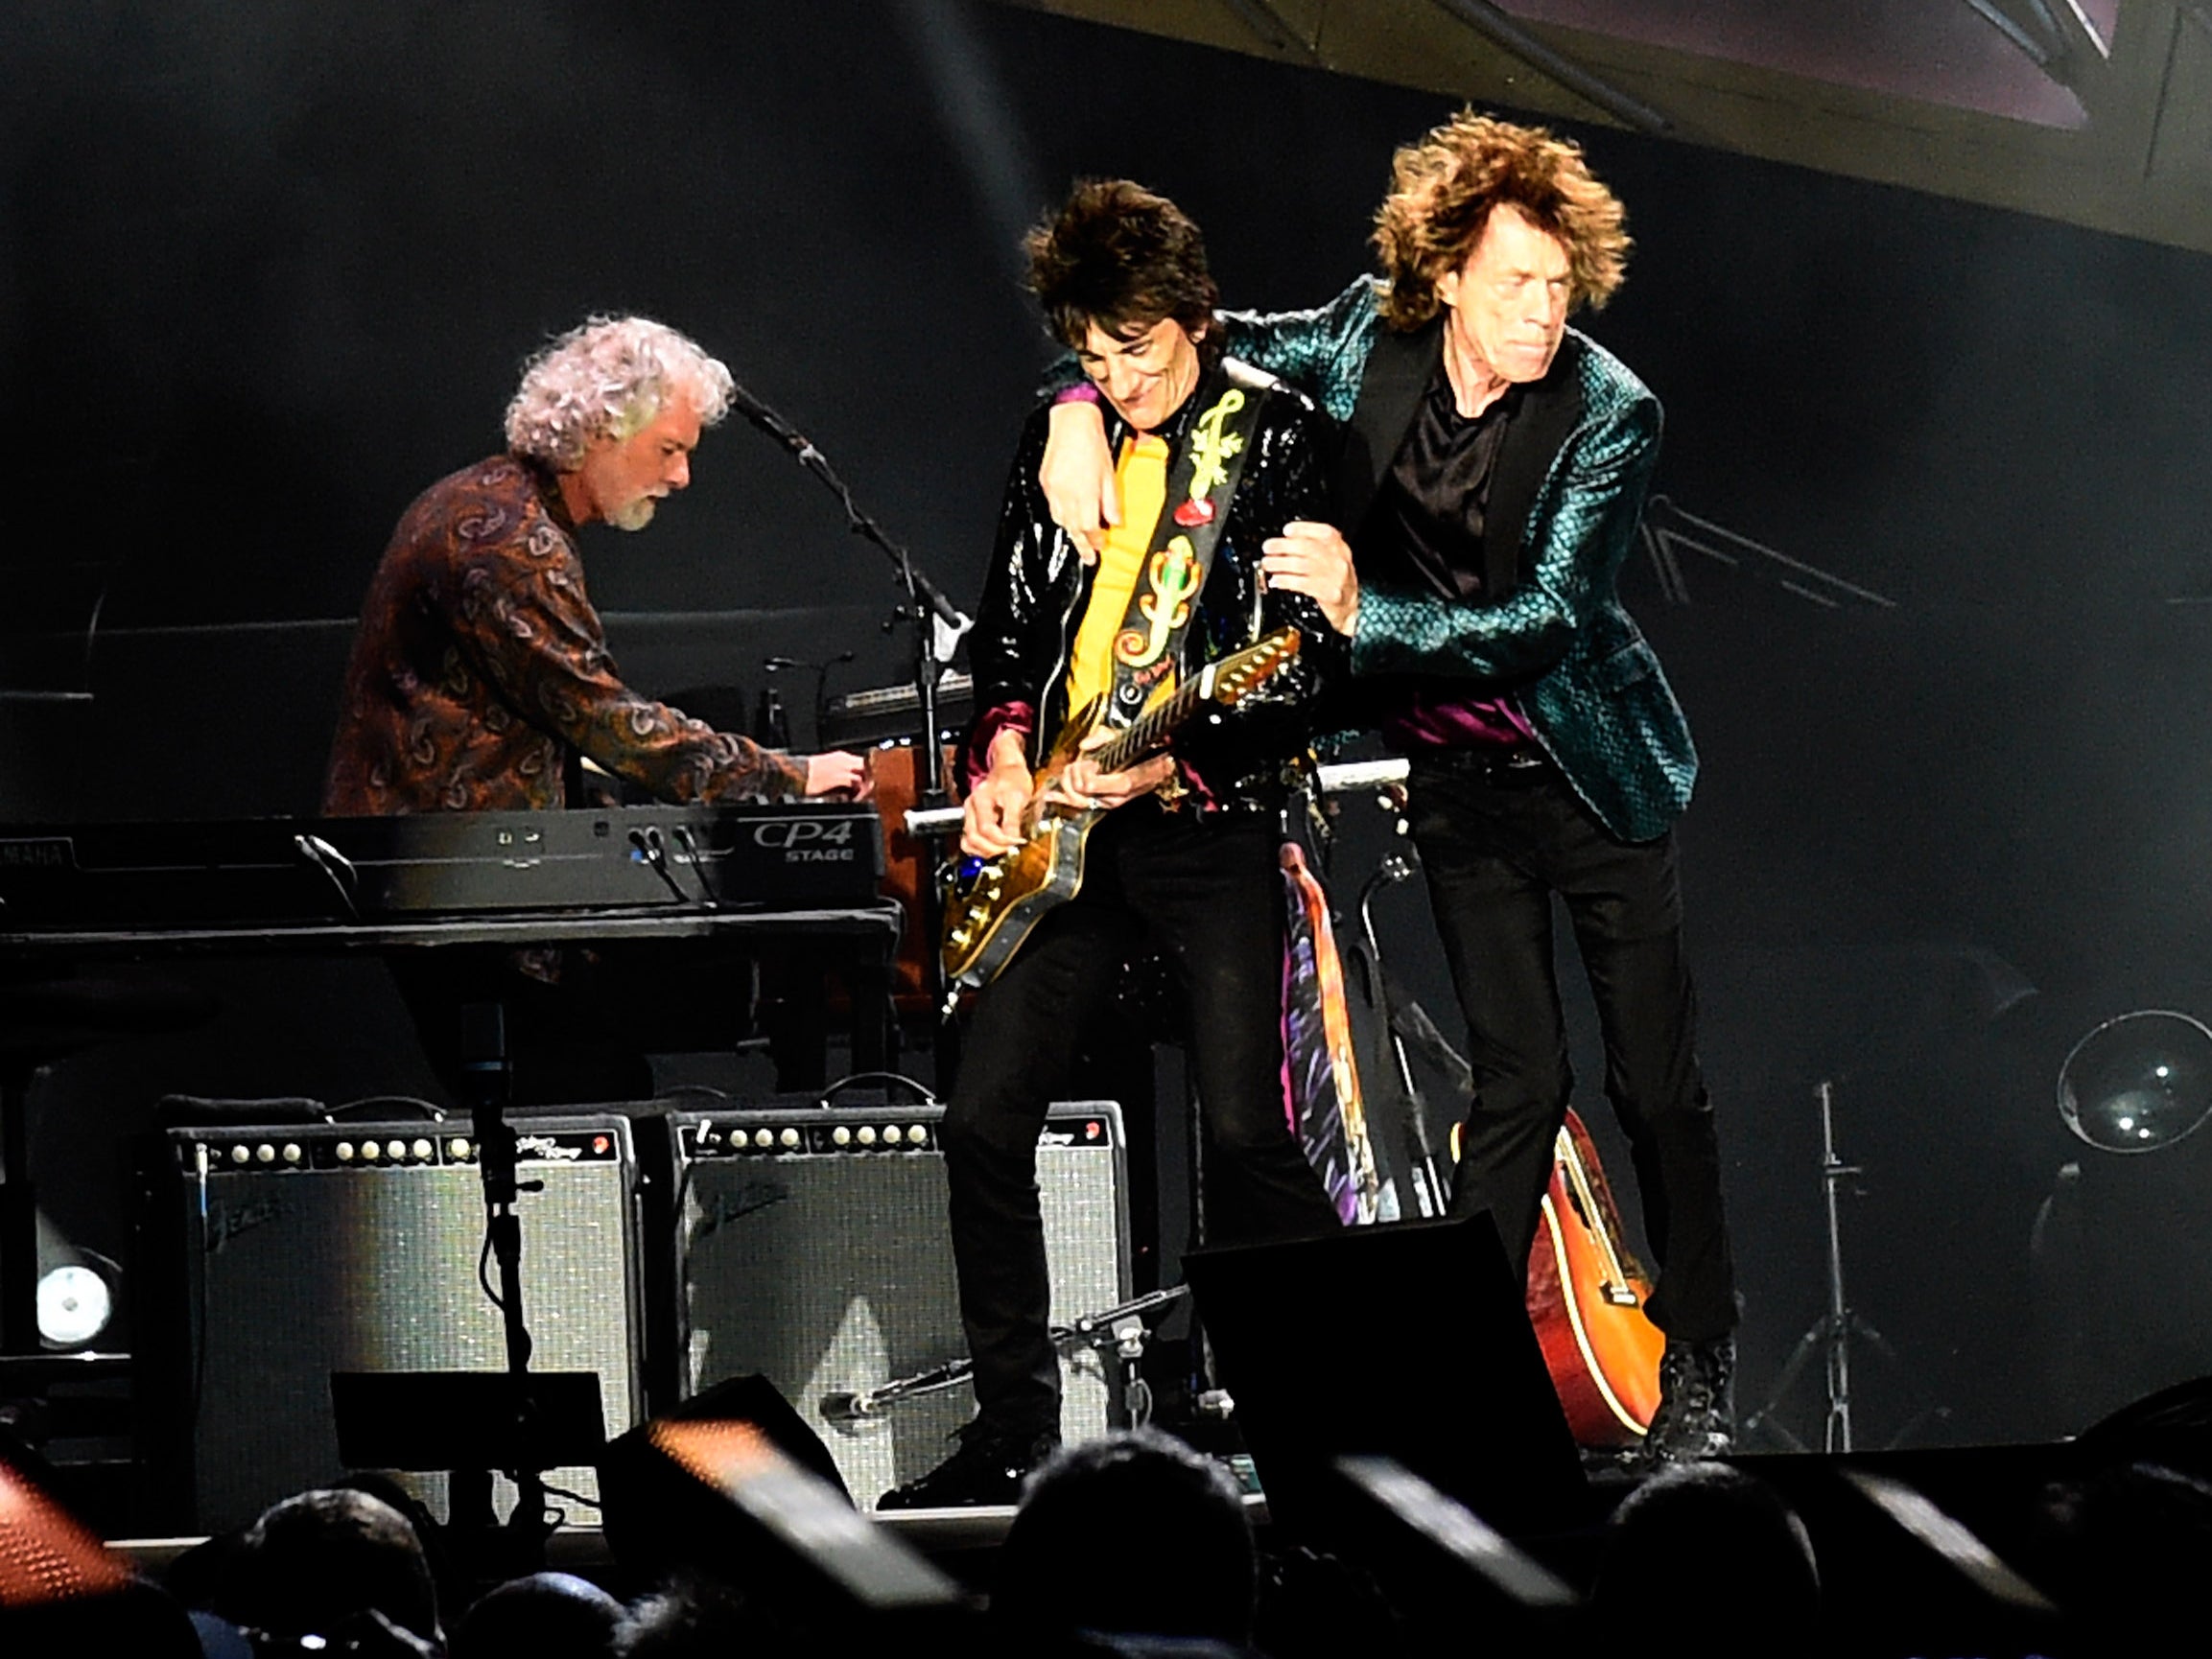 Rodando con los Stones: Leavell, Ronnie Wood y Mick Jagger en el escenario de Nashville en 2015